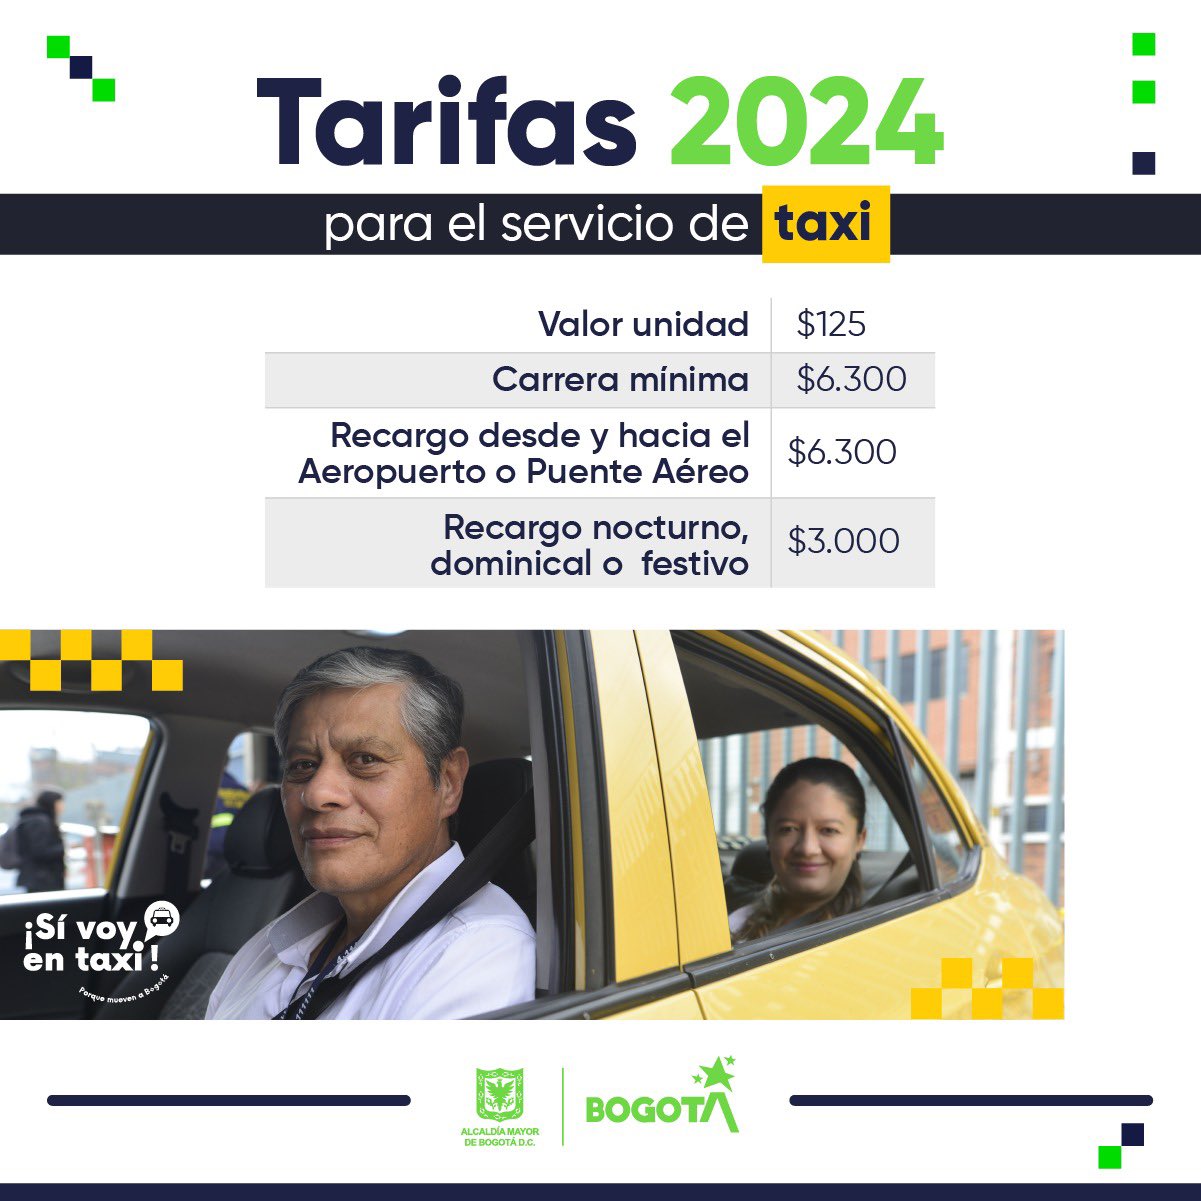  Las tarifas para el servicio de taxis en Bogotá se actualizarán, luego de un análisis riguroso realizado por la Administración Distrital y teniendo en cuenta los indicadores económicos como el Índice de Precios al Consumidor (IPC) 2023 y el salario mínimo para el 2024. El ajuste del valor para la tarifa del servicio público de taxi se hace con base en la variación de costos del servicio y luego se socializaron previamente con el gremio. A partir de esto, la carrera mínima y sus recargos respectivos se establecen de la siguiente manera: Valor unidad: $125 Banderazo o arranque: $3.500 Carrera mínima: $6.300 Recargo desde y hacia el Aeropuerto o Puente Aéreo: $6.300 Recargo nocturno (8:00 p.m. a 5:00 a.m.), dominical o festivo: $3.000 Para hacer efectiva la nueva tarifa, las y los conductores de taxi deben realizar la refrendación de la tarjeta de control, la cual debe contener el valor de las tarifas vigentes. El incremento del 20.1% del servicio de taxis es una apuesta de la Administración Distrital, en pro de la calidad del servicio y la renovación de la flota, que fortalezca la experiencia de viaje del usuario. Asimismo, se prevé que esta medida contribuya a que el gremio siga mejorando la calidad del servicio que le brinda a la ciudadanía. Según el Índice General de Satisfacción del Cliente 2022, la calificación por parte de los usuarios mostró una mejora en este servicio. 